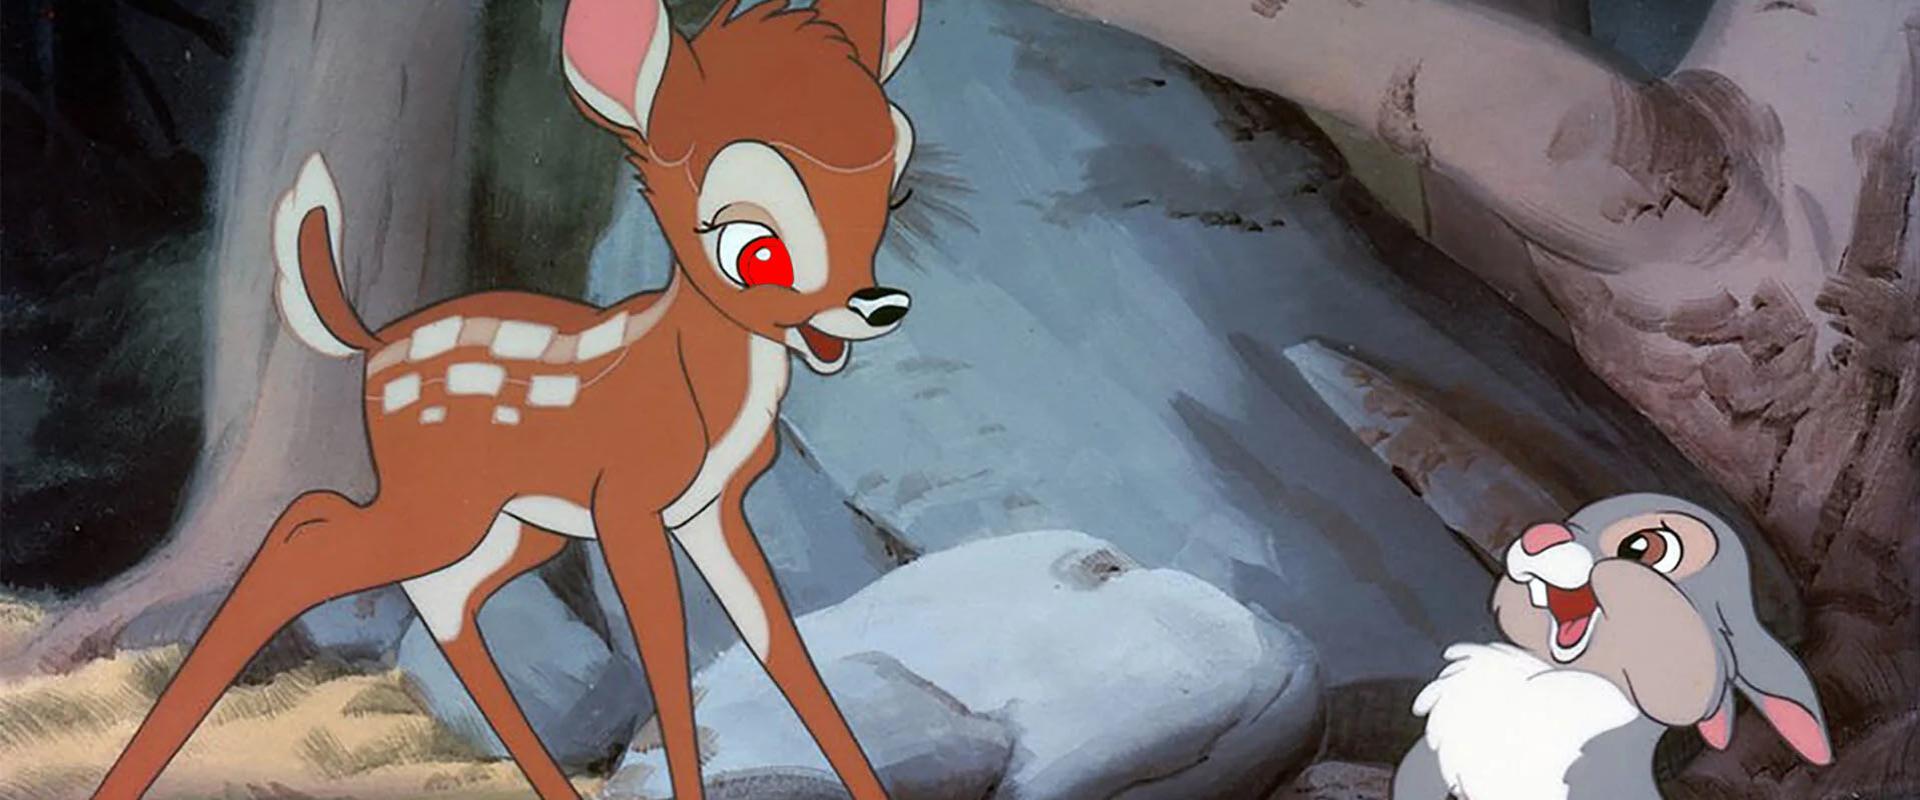 Egyszer lőttünk őzre, abból is egy vérszomjas Bambi lett